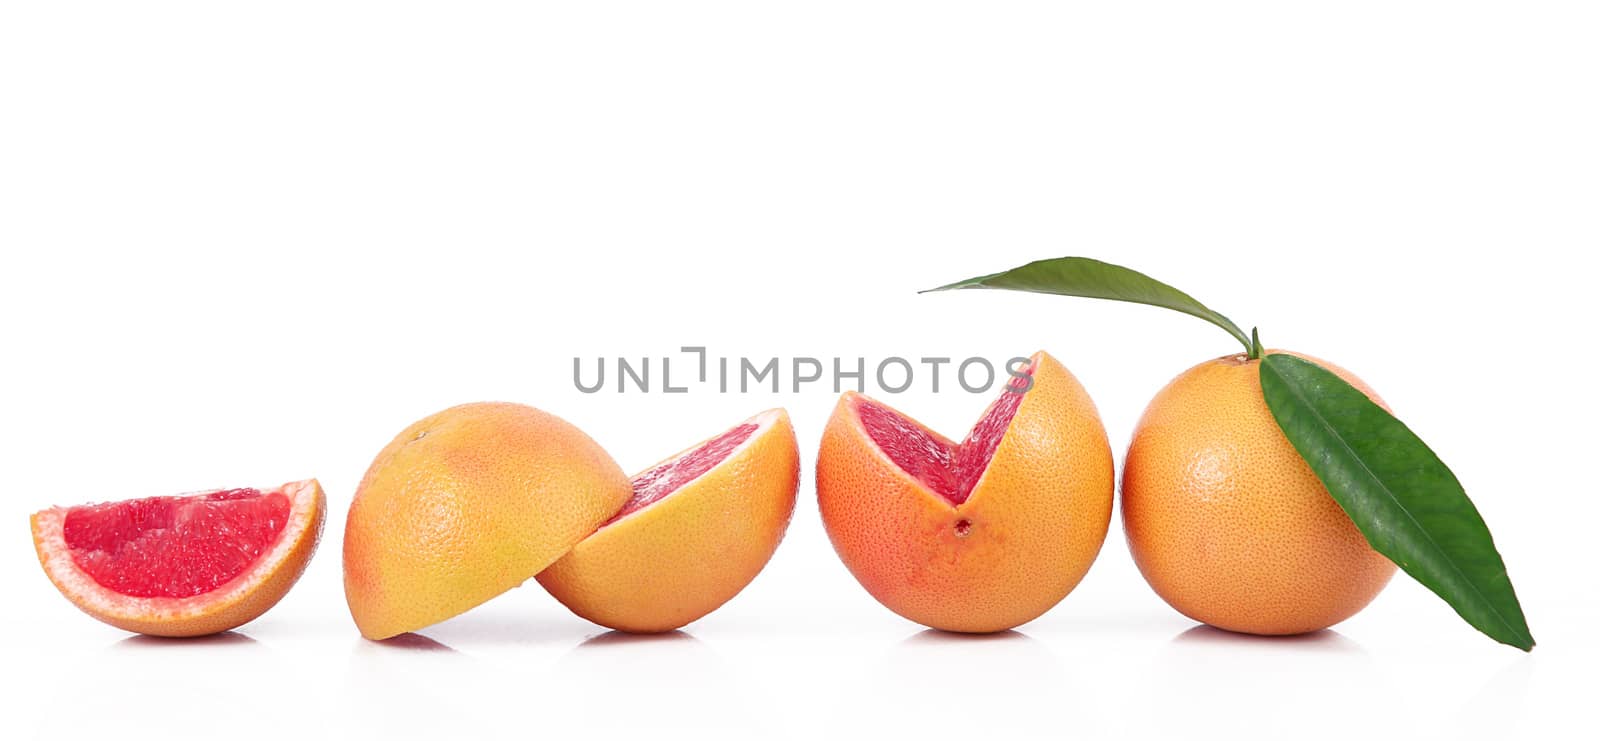 grapefruit on white background by photobeps